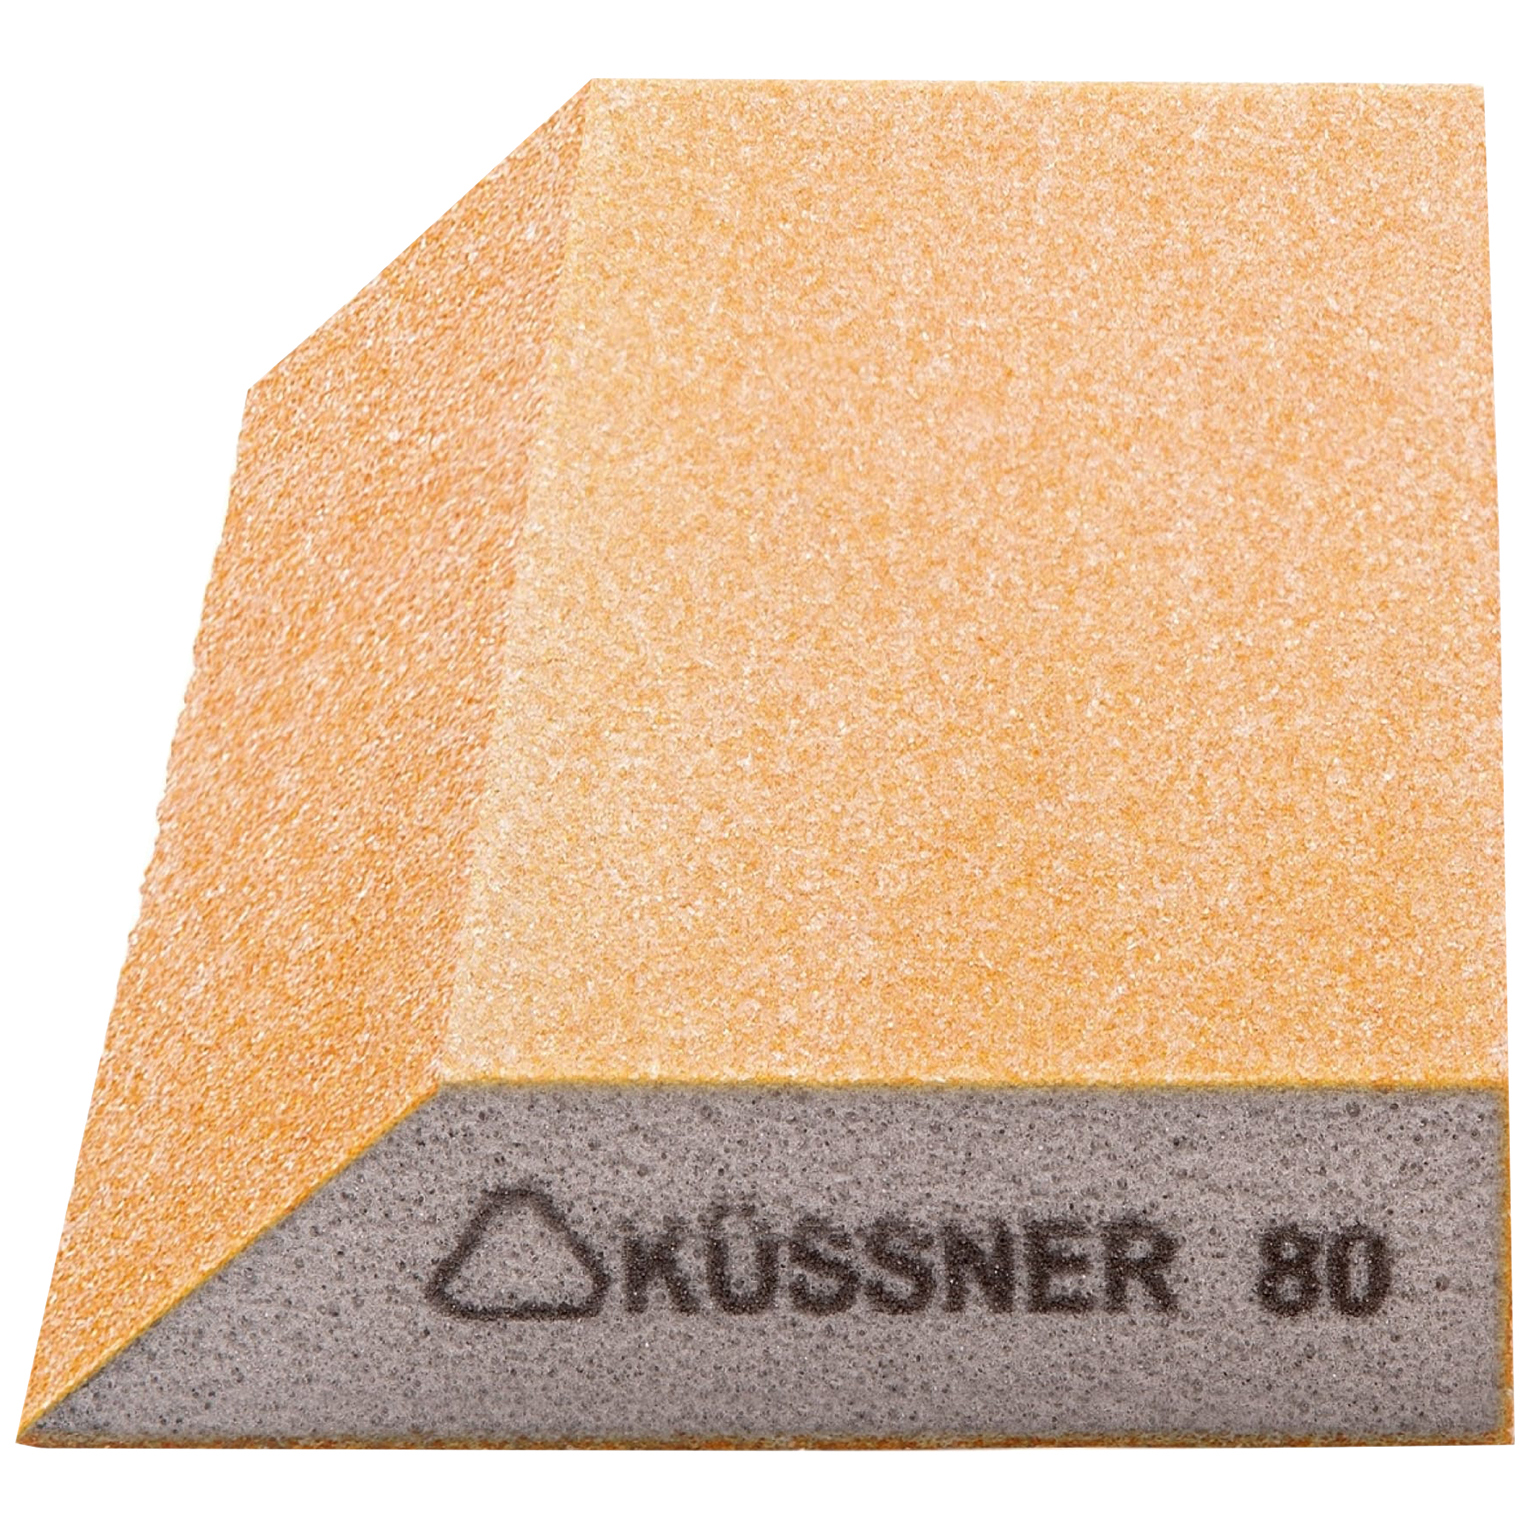 KUSSNER Брусок шлифовальный Р80, трапеция Soft, 125x90x25 мм 1000-250080